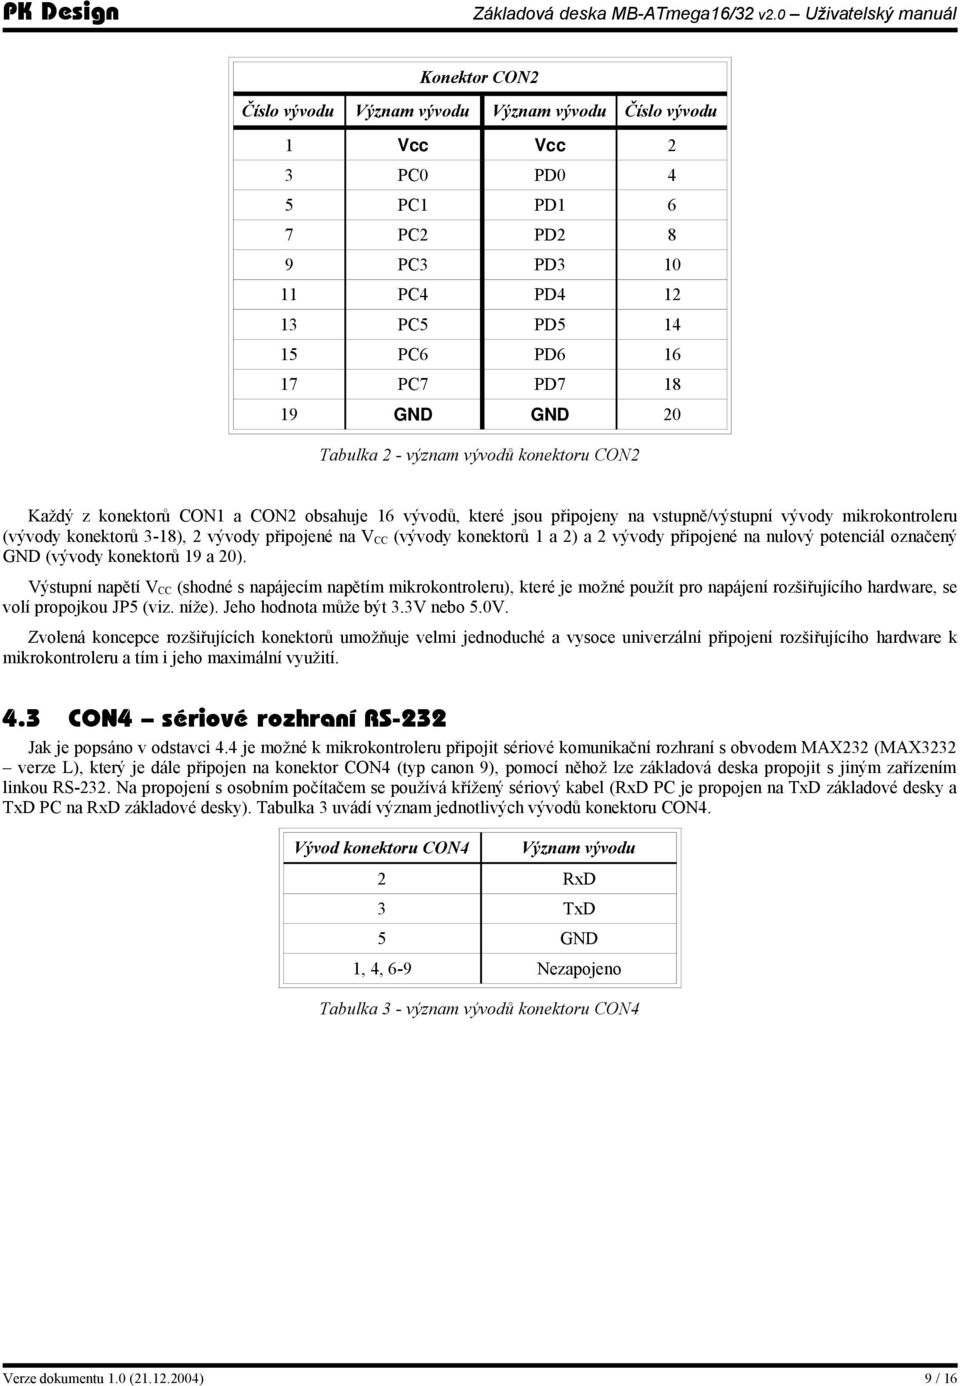 na V CC (vývody konektorů 1 a 2) a 2 vývody připojené na nulový potenciál označený GND (vývody konektorů 19 a 20).